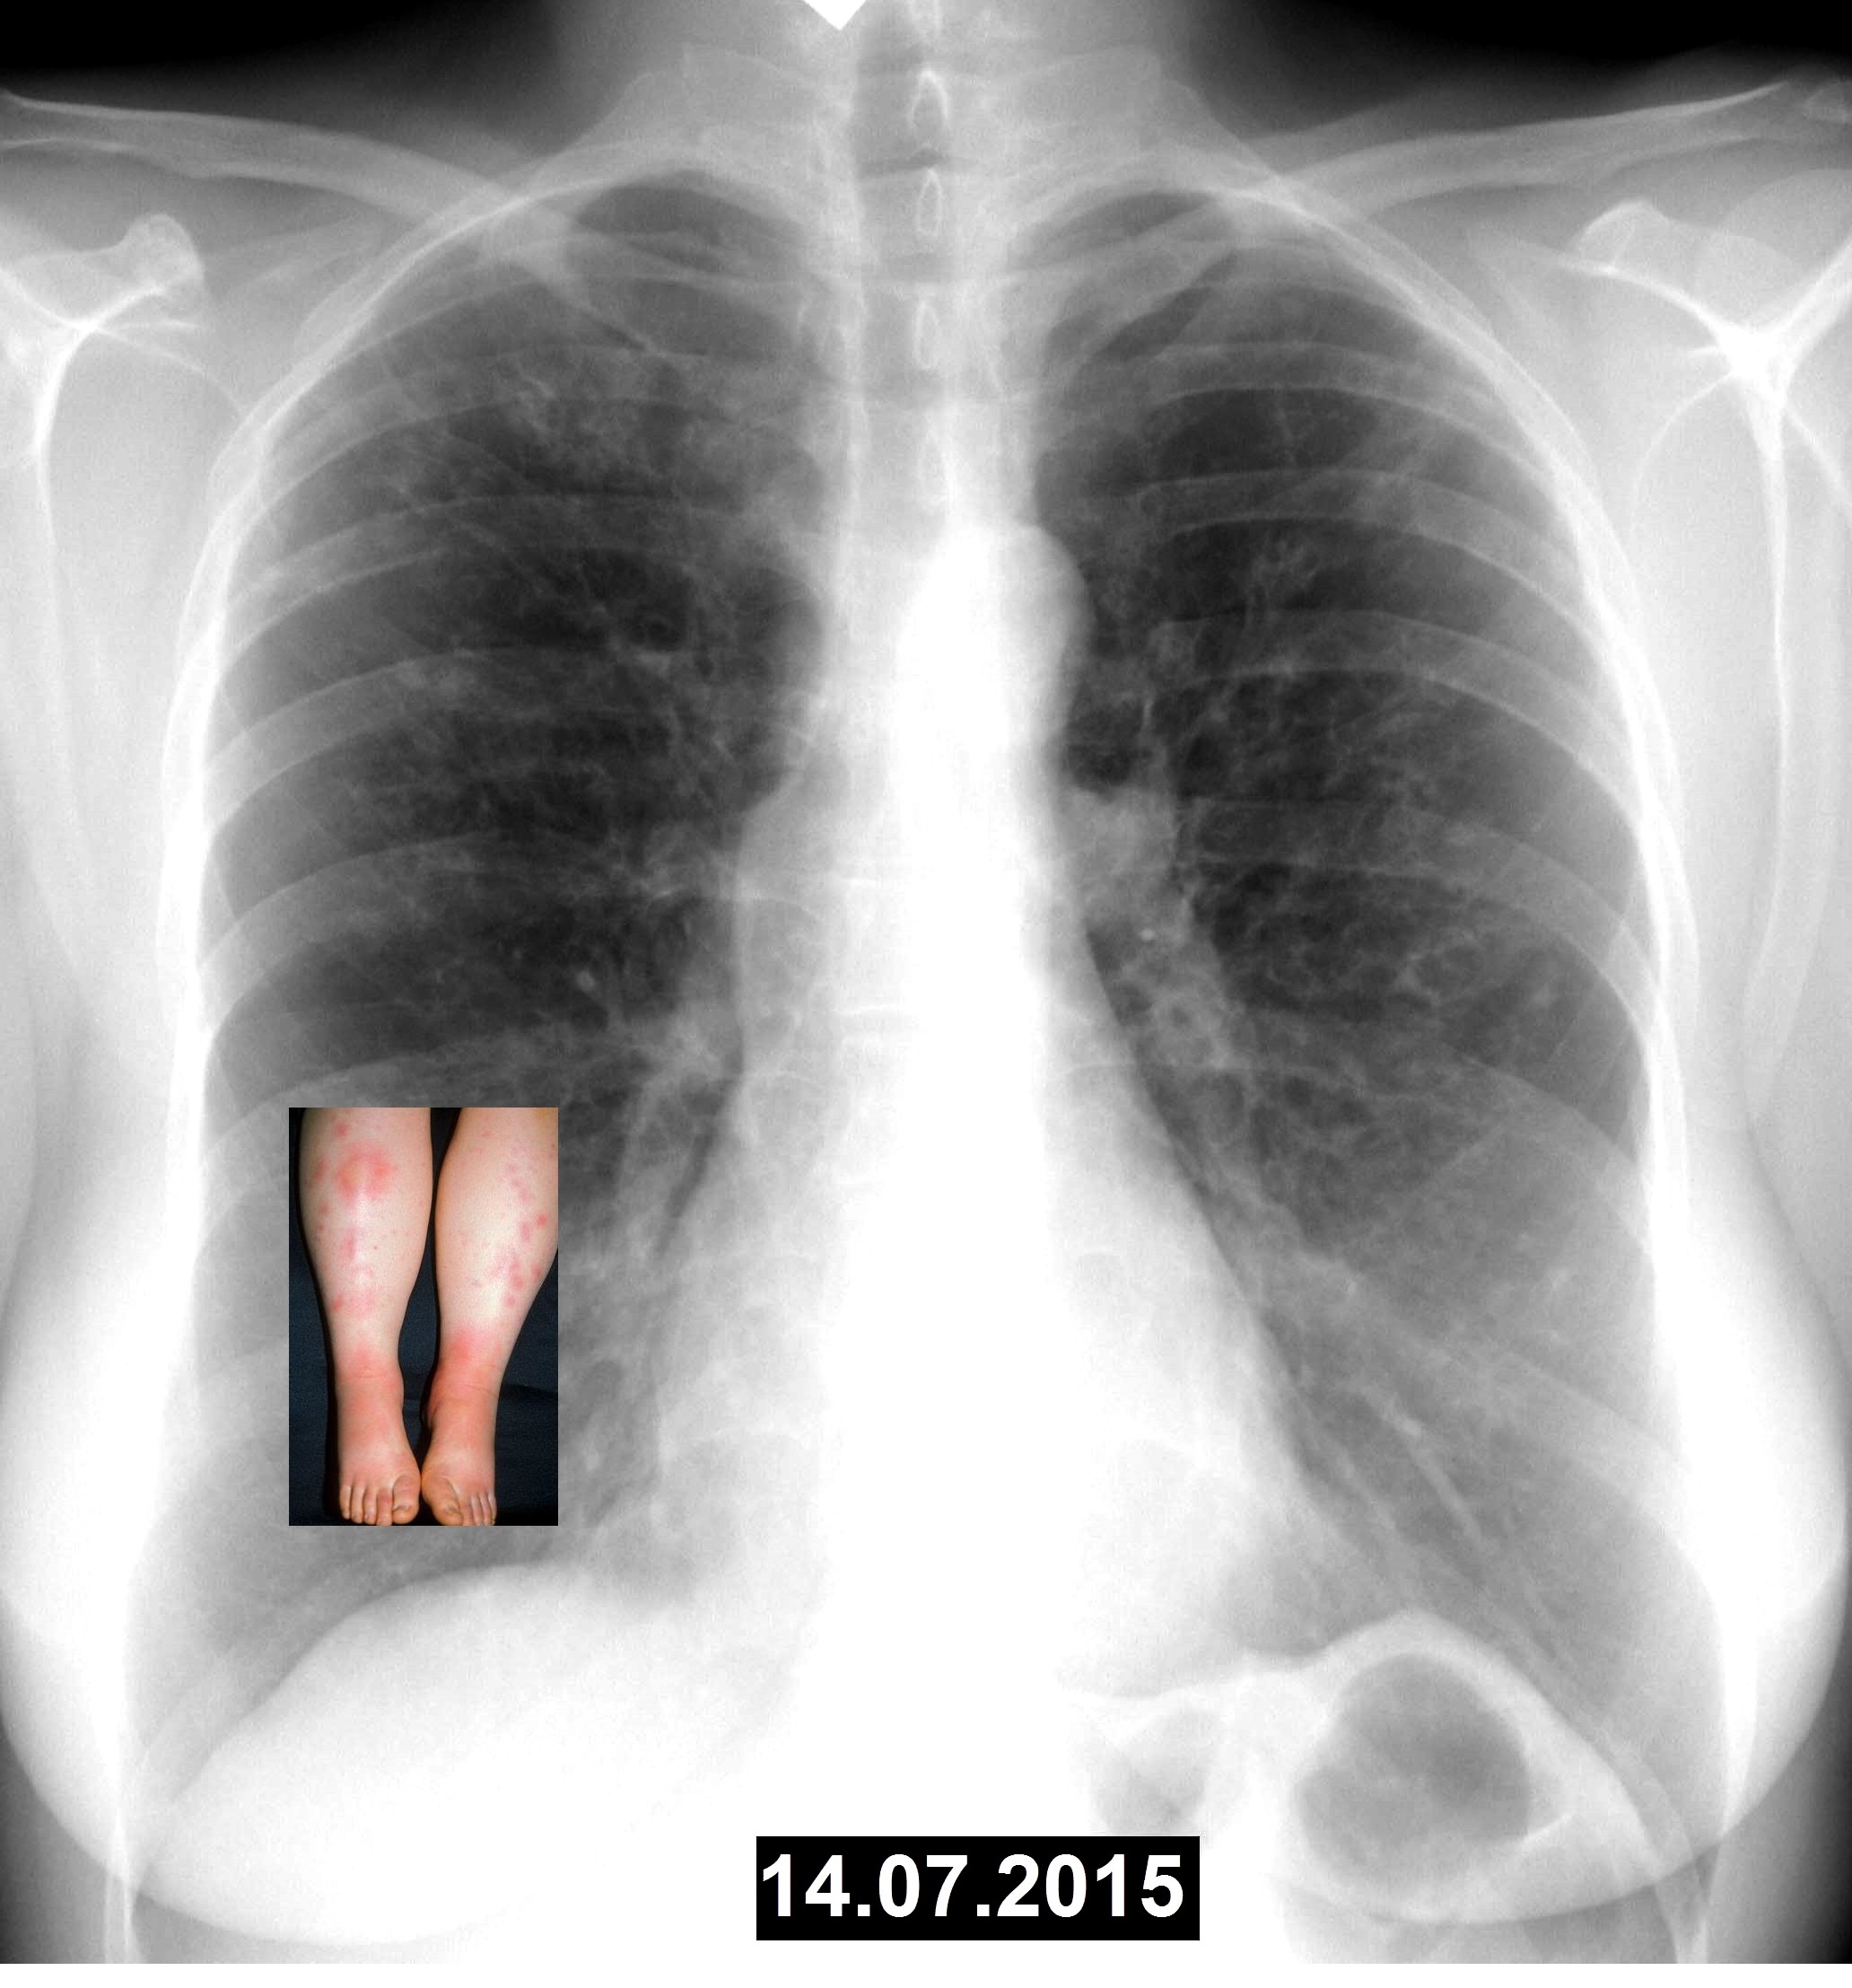 1 легкое меньше другого. Снимок двухсторонней пневмонии. Двухсторонняя пневмония рентген. Двухстороннее воспаление лёгких. Рентген легких пневмония двухсторонняя.